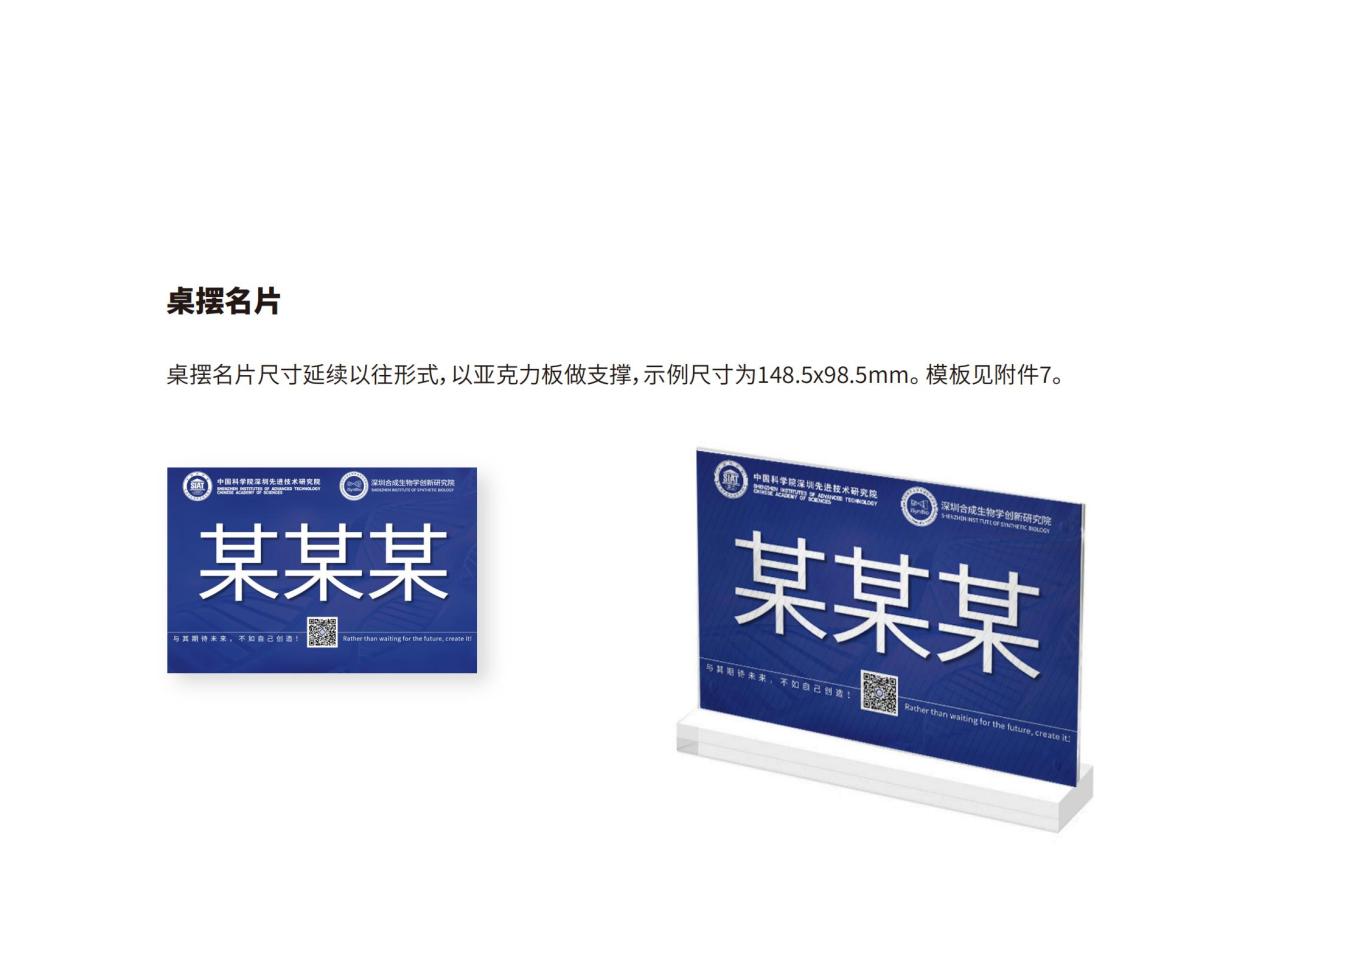 深圳合成生物学创新研究院品牌设计规范图30